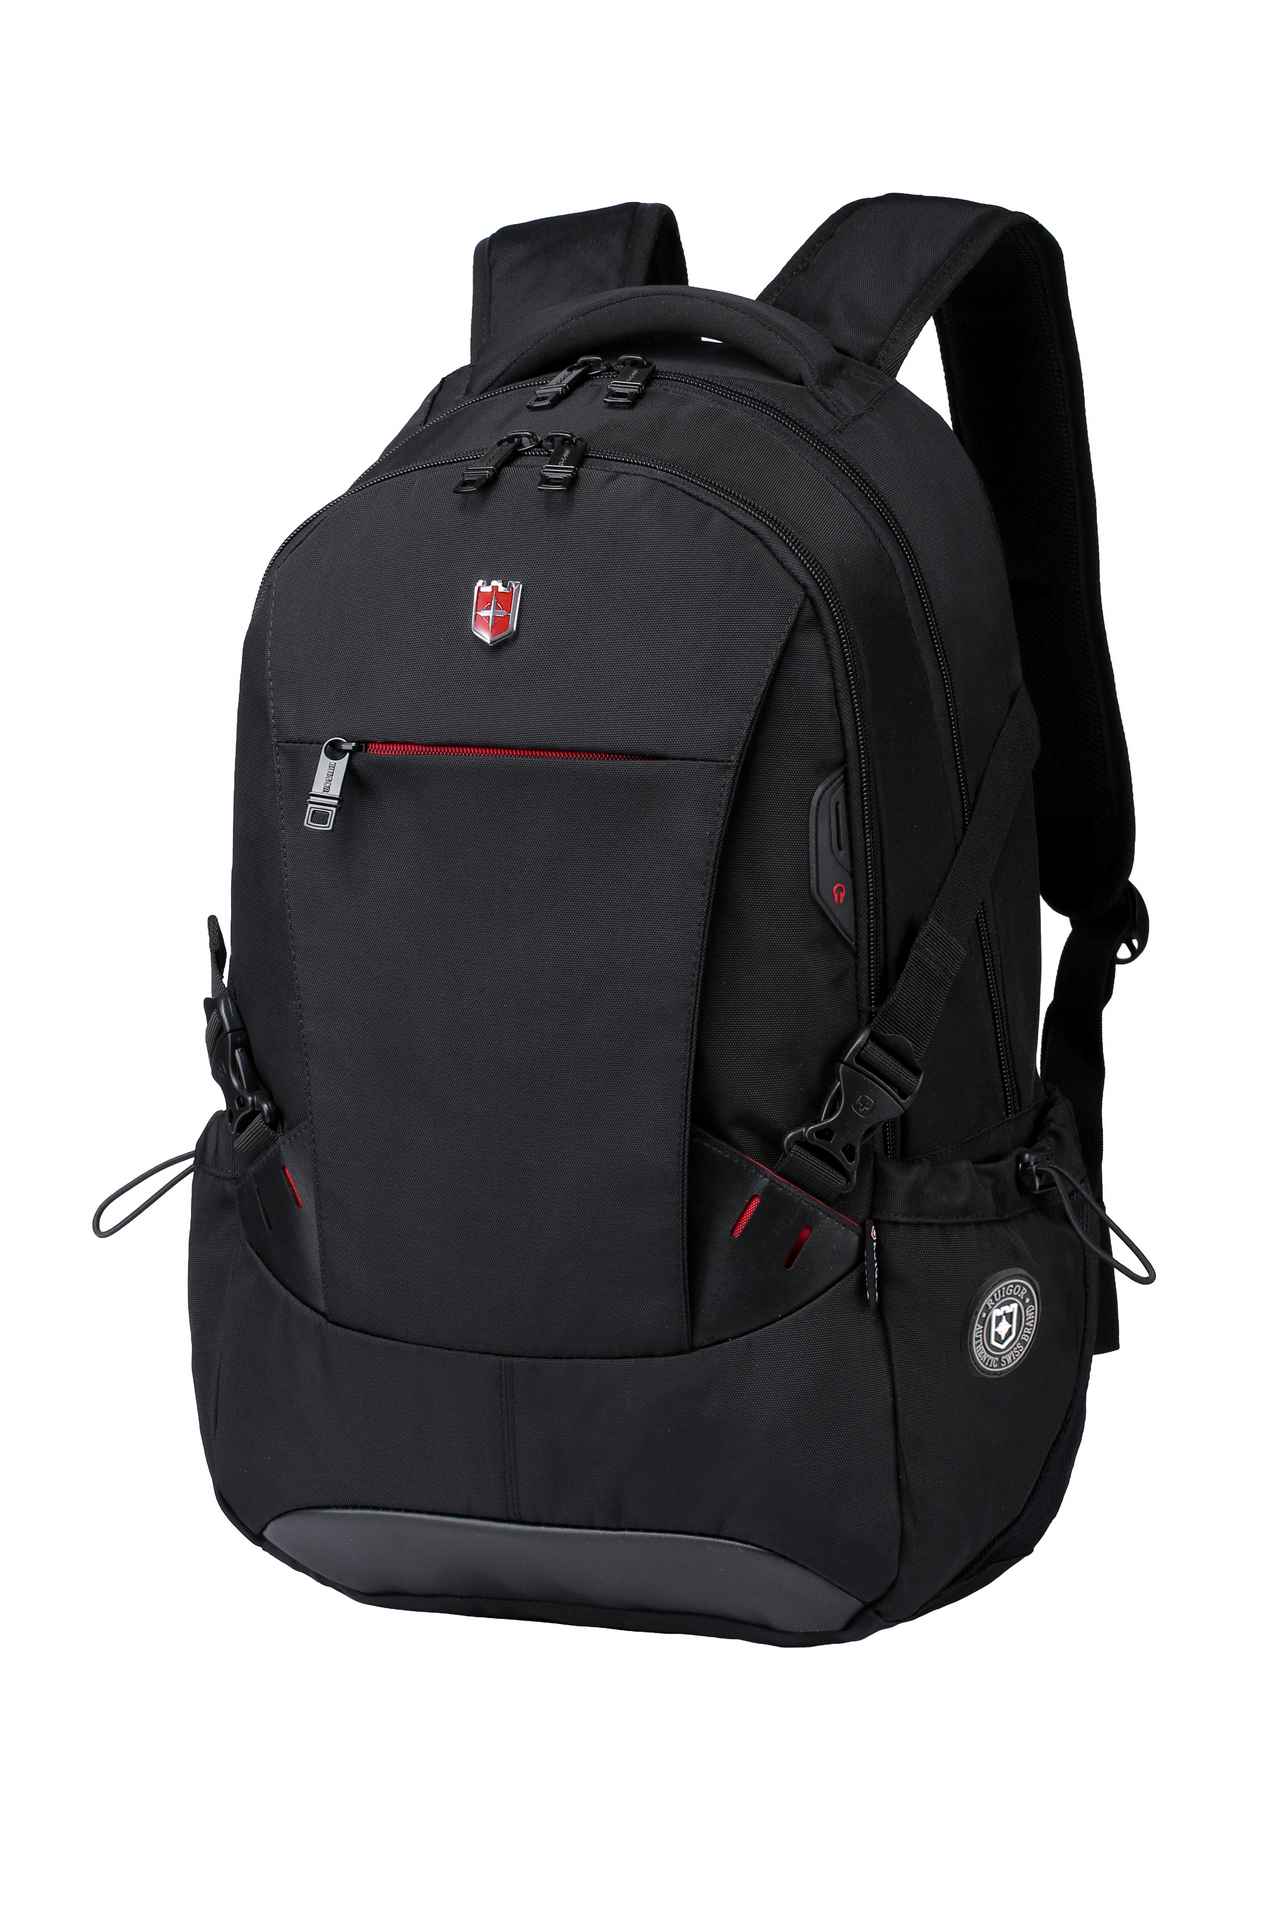 RUIGOR ICON 81 Laptop Backpack Black - Swiss Ruigor